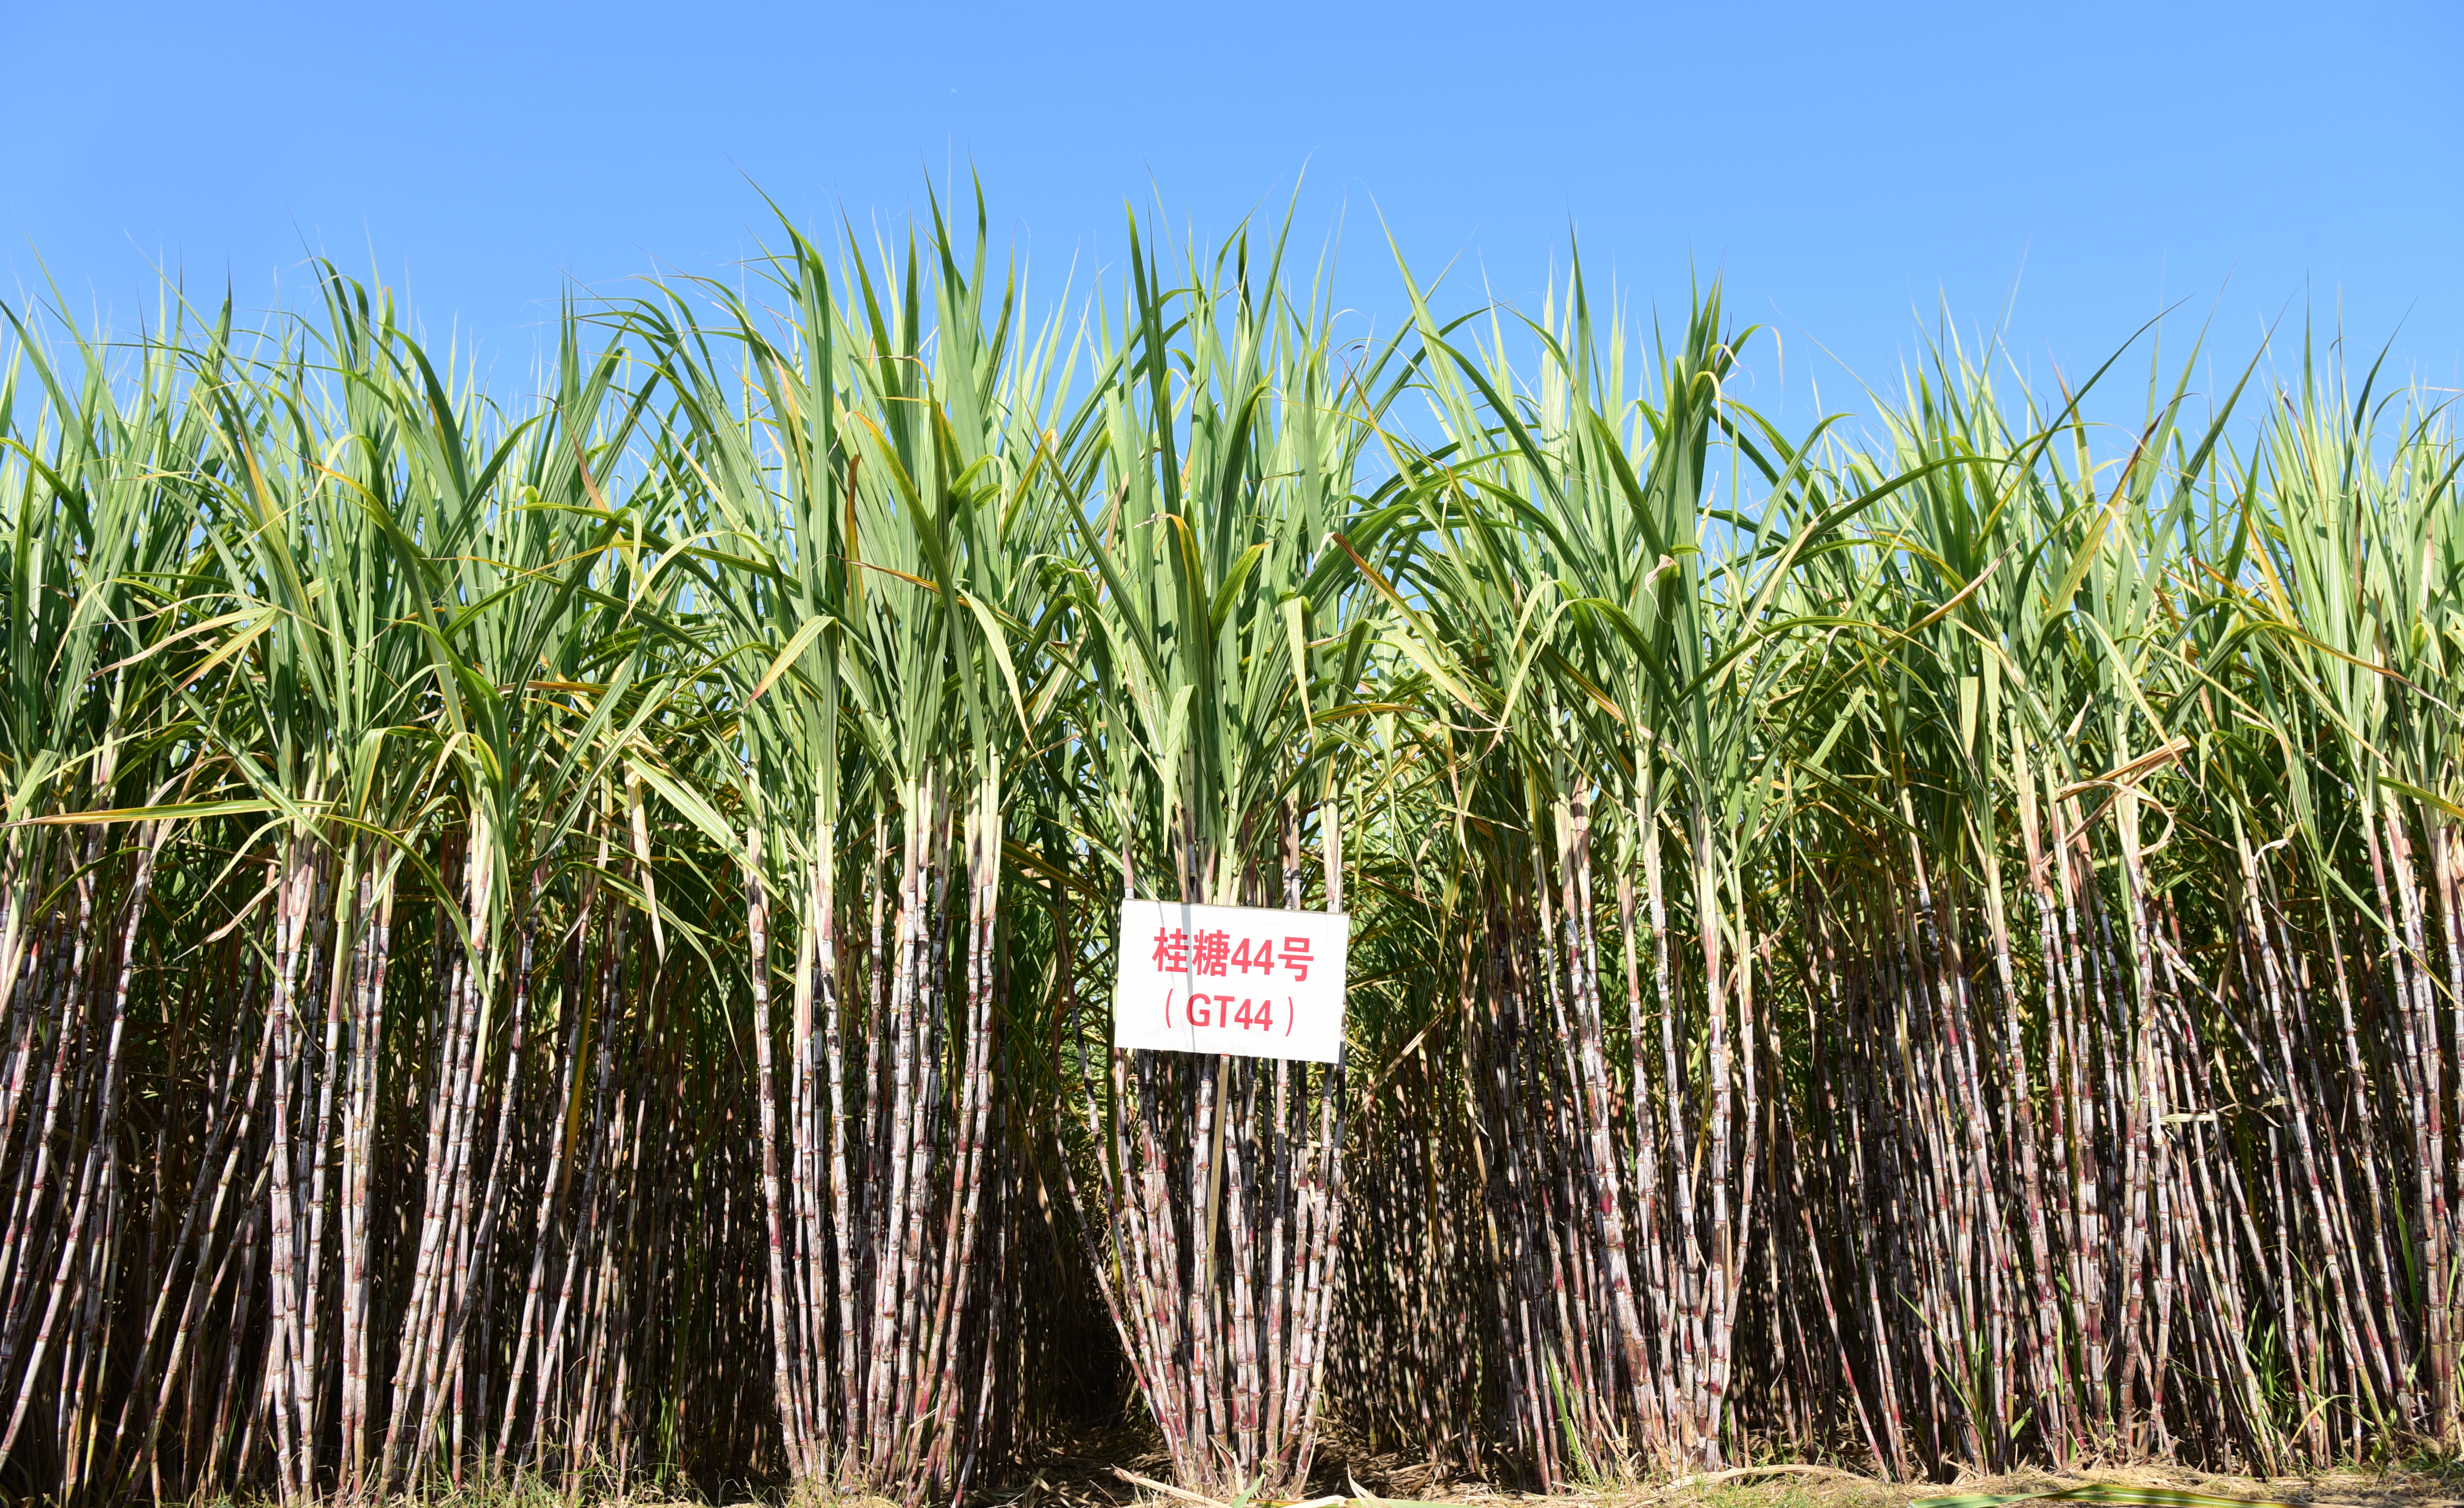 甘蔗所选育的甘蔗品种“桂糖44号”入选中国热带作物学会年度优秀科技成果